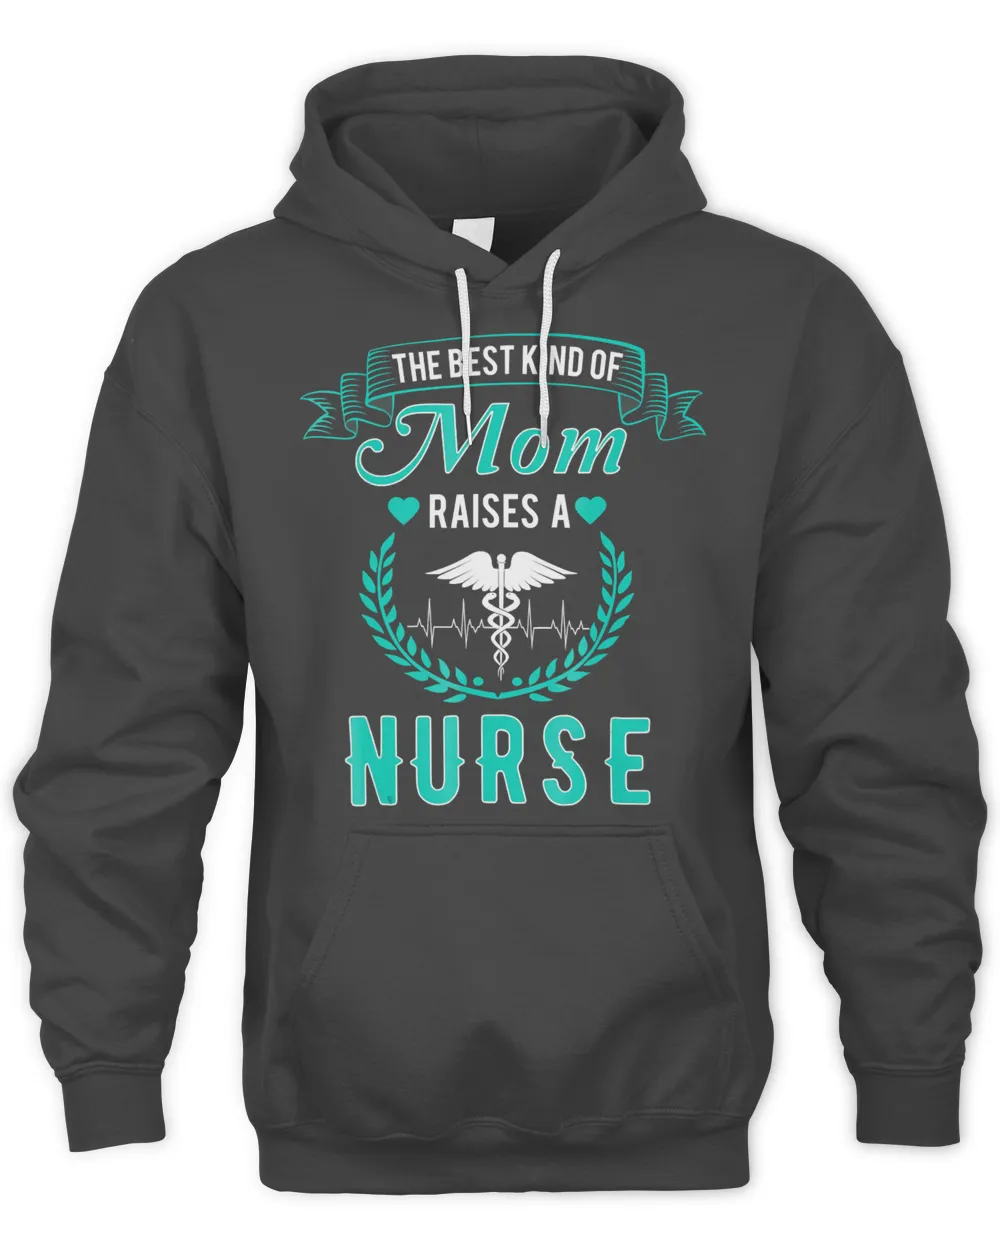 The Best Kind Of Mom Raises A Nurse T Shirt -Nursing Mom Tee